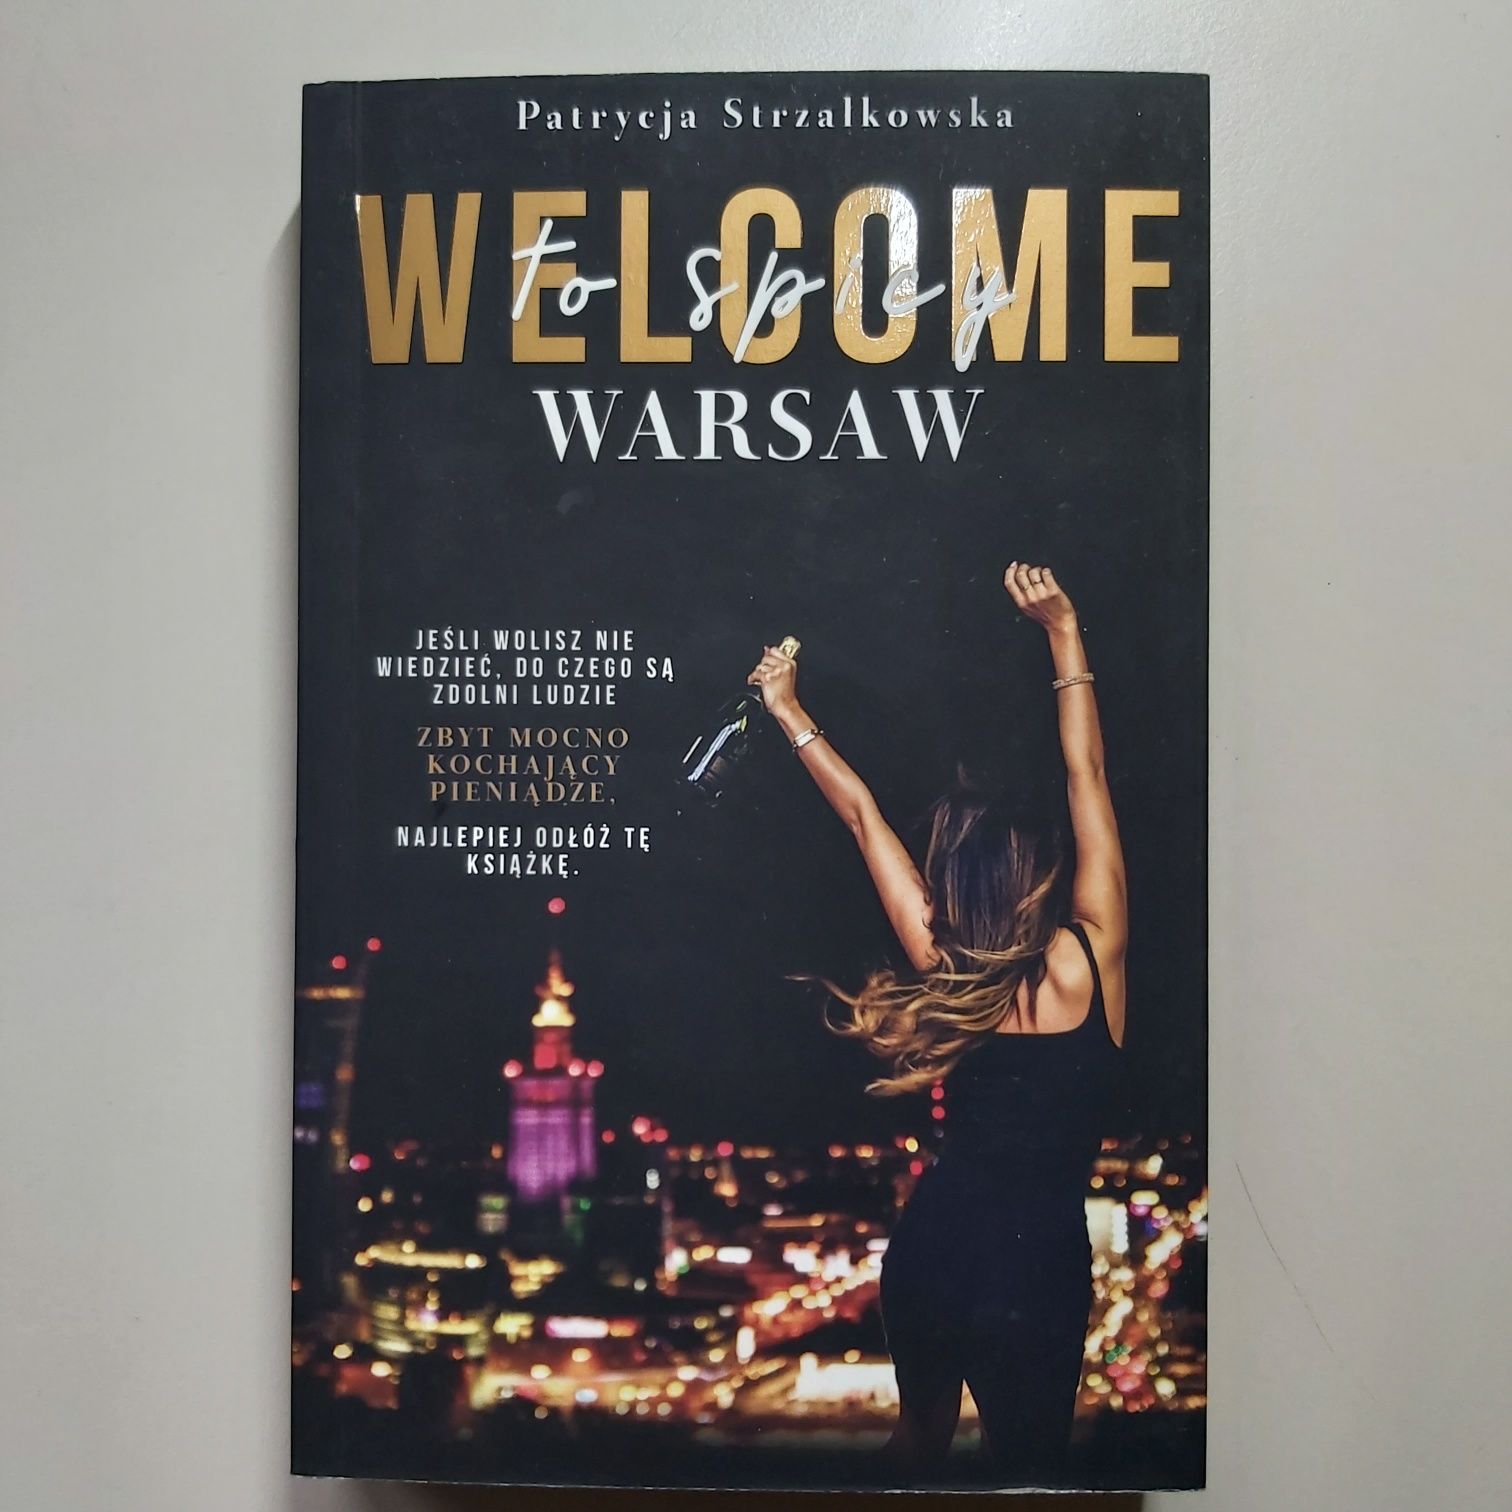 Sprzedam książkę pt." Welcome to spicy Warsaw".